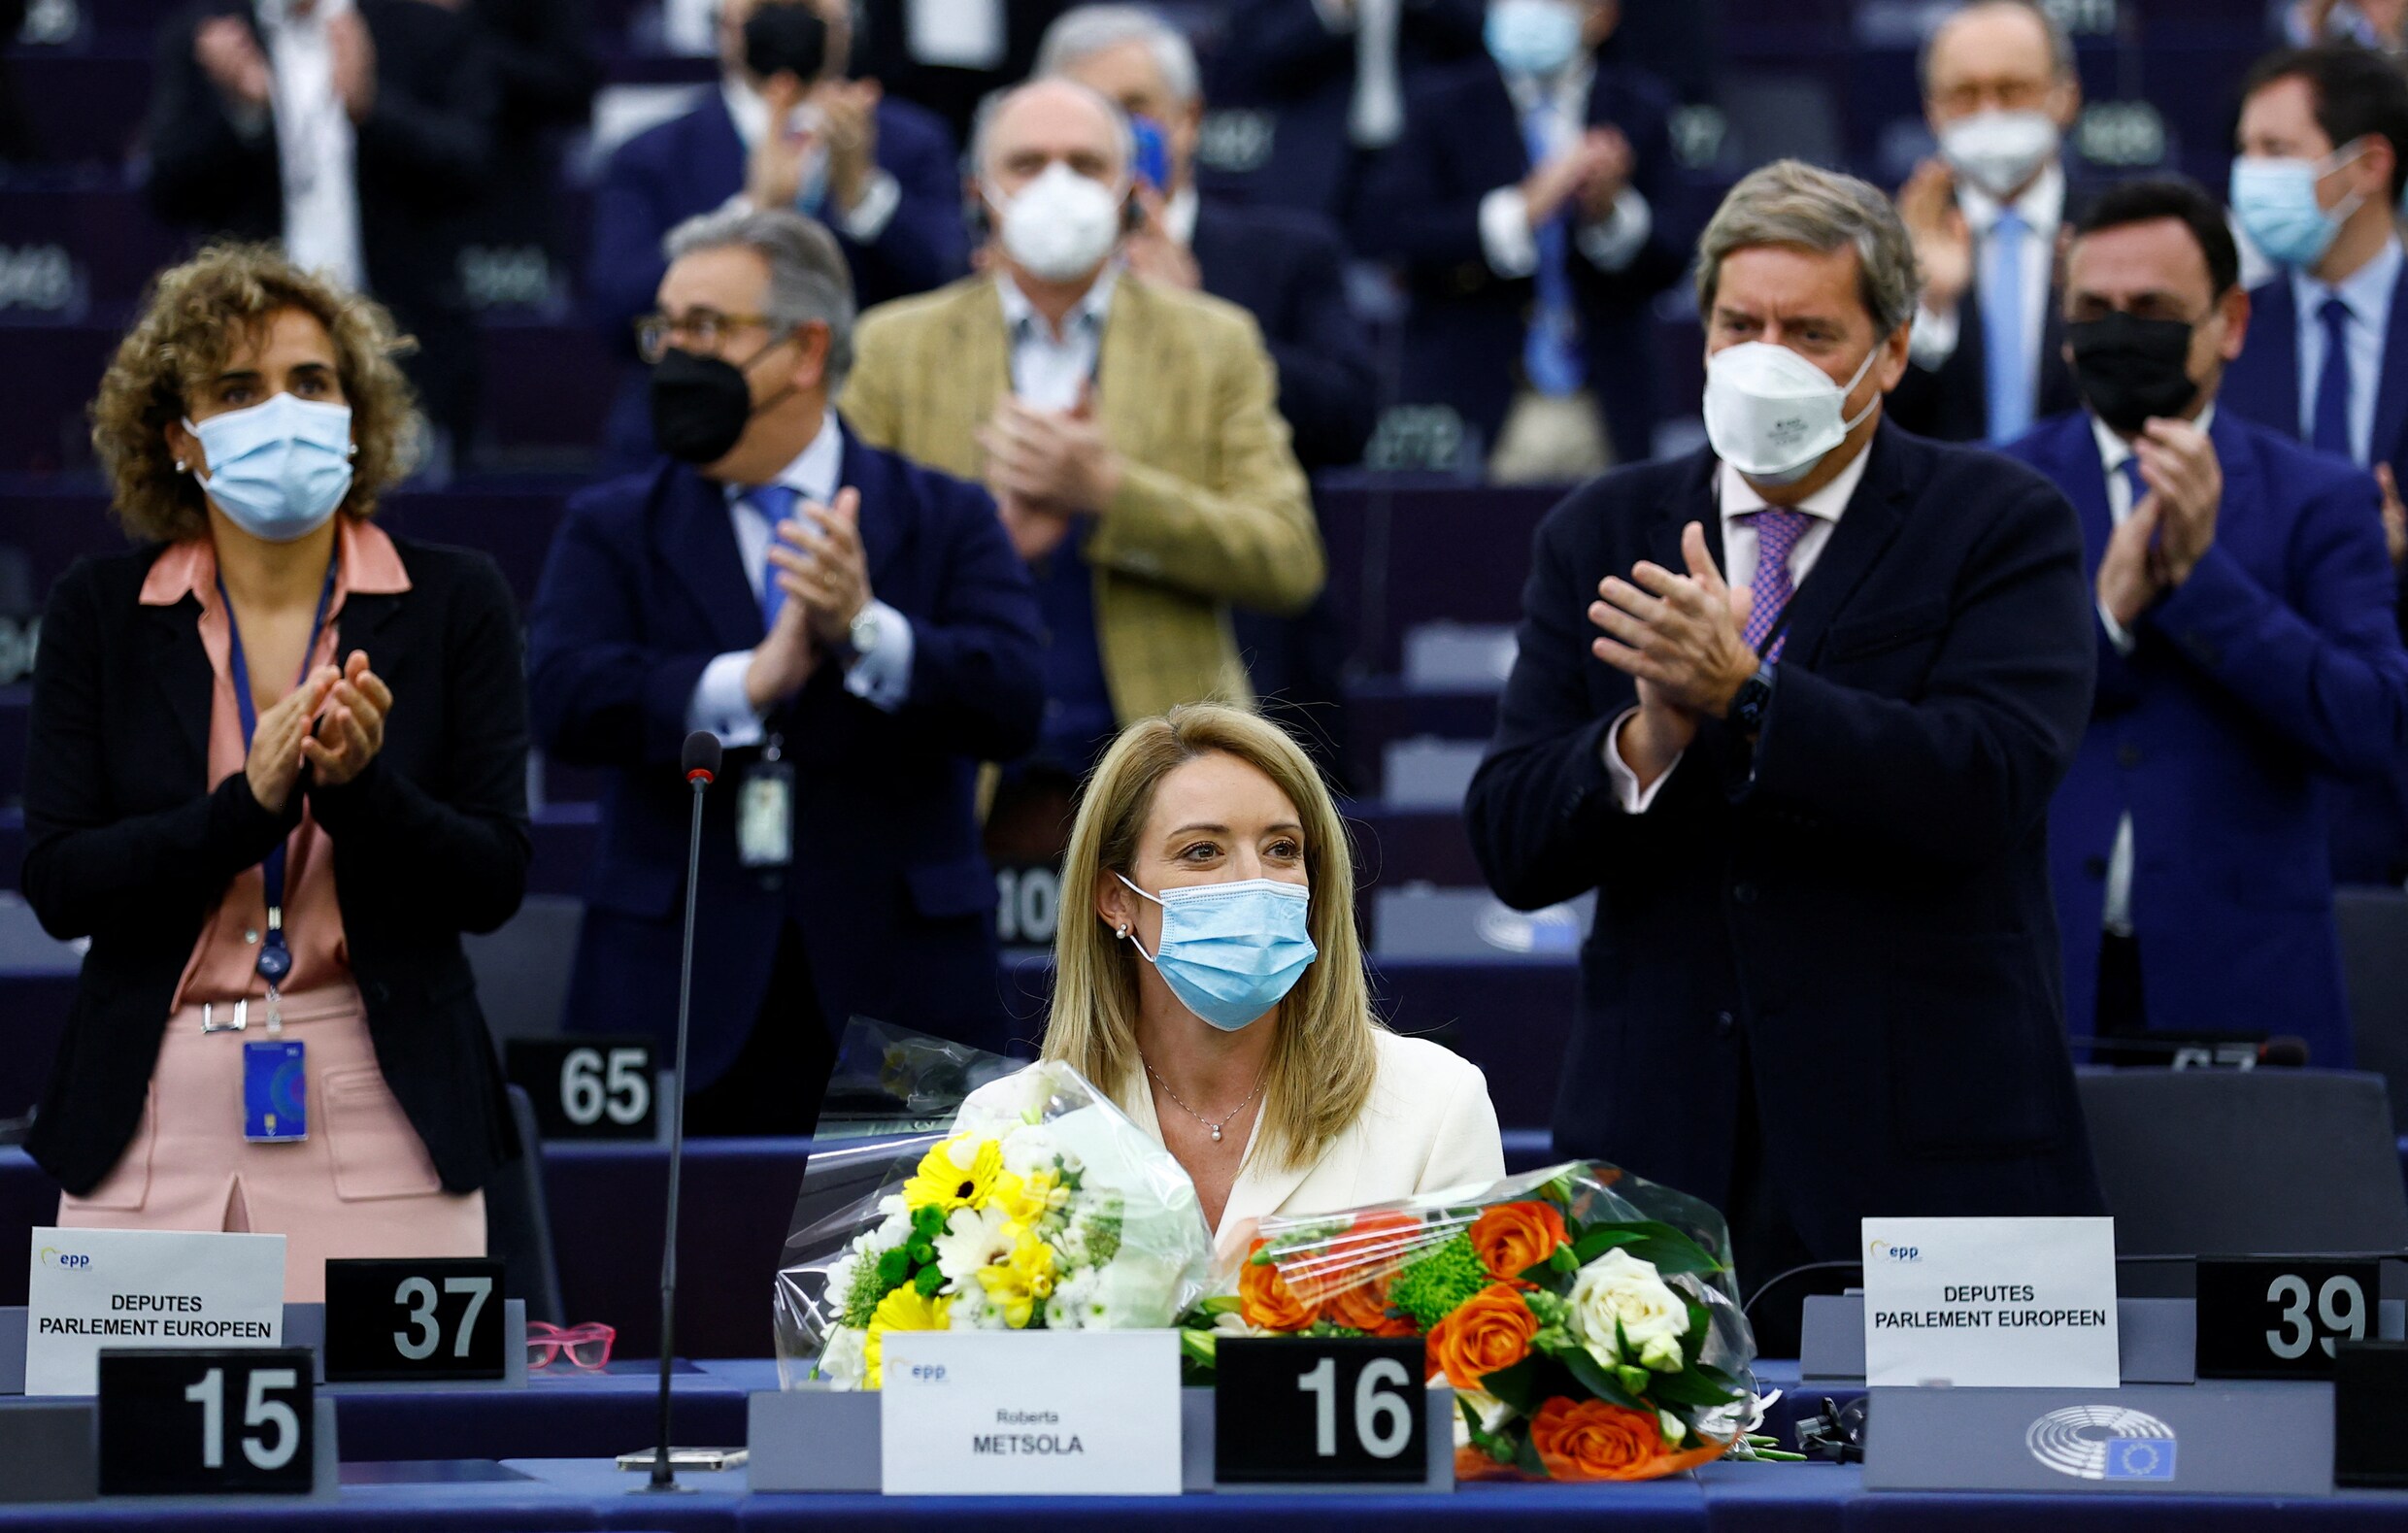 De feminist die tegen abortus is: tegenstanders vinden de nieuwe voorzitter van het Europees Parlement nu al een ‘schande’